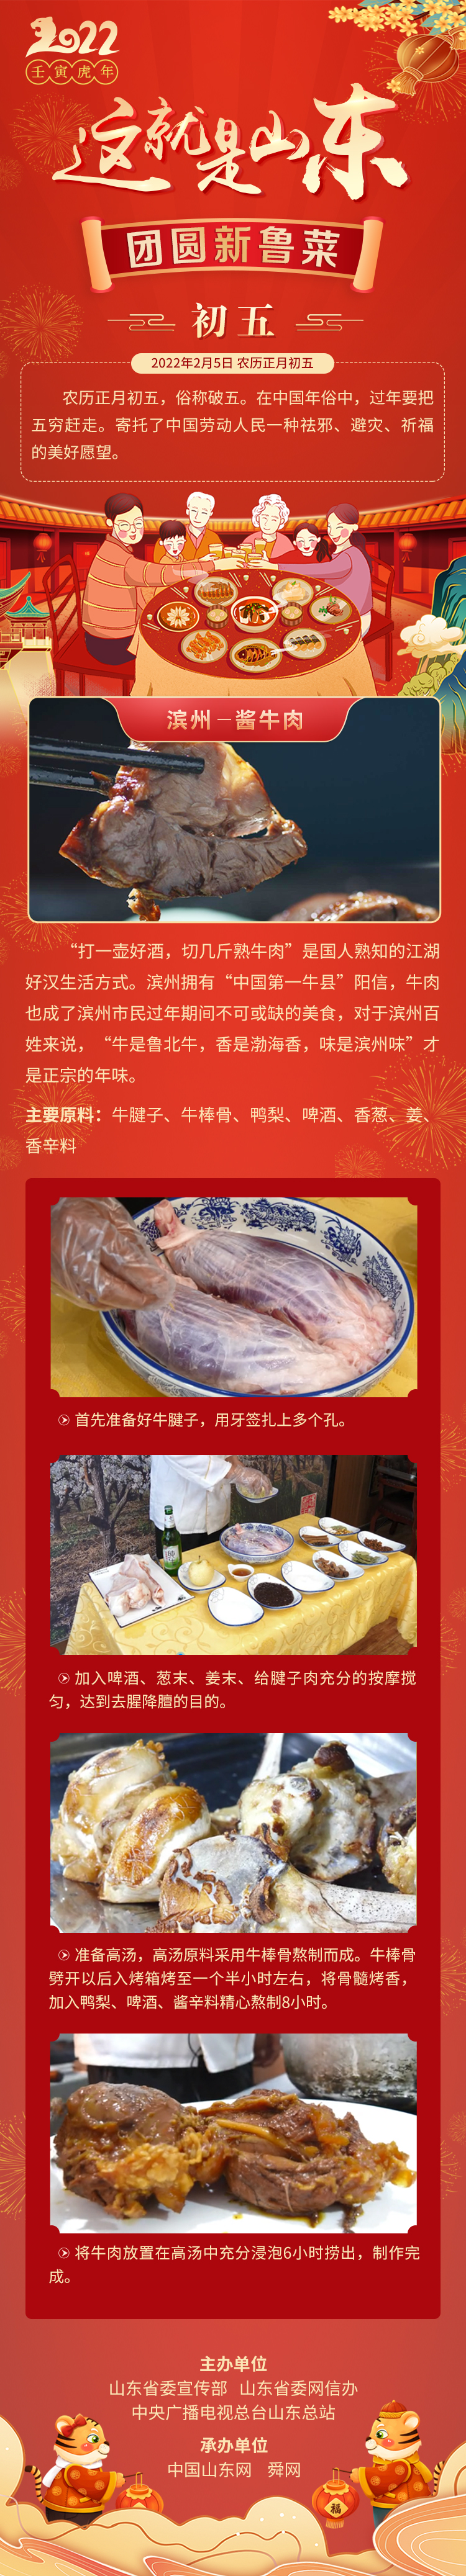 这就是山东·团圆新鲁菜——滨州-酱牛肉